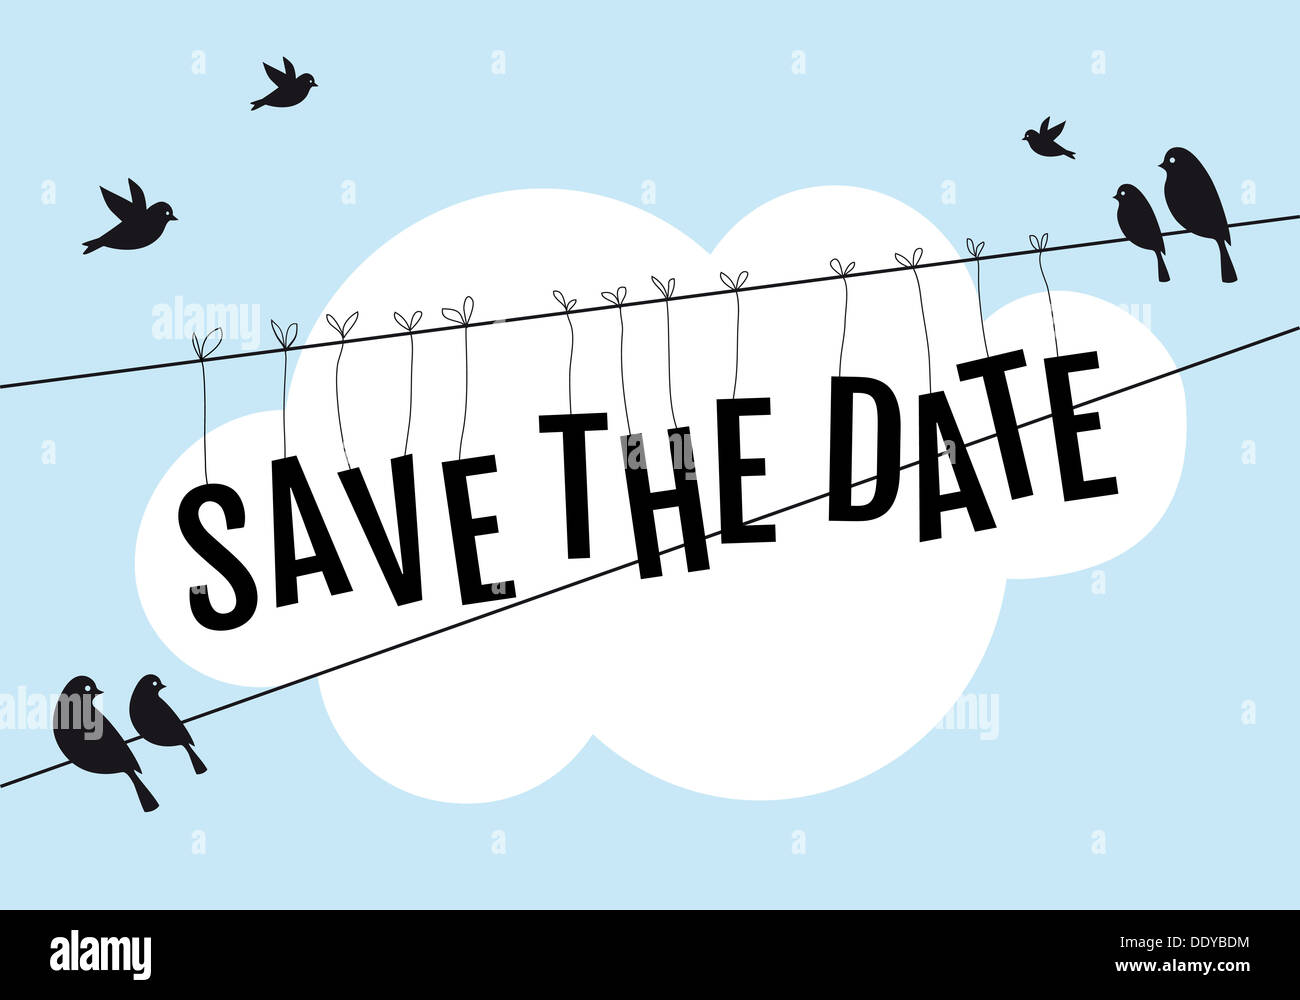 Enregistrer la date, les oiseaux assis sur le fil dans le ciel bleu, illustration d'arrière-plan Banque D'Images